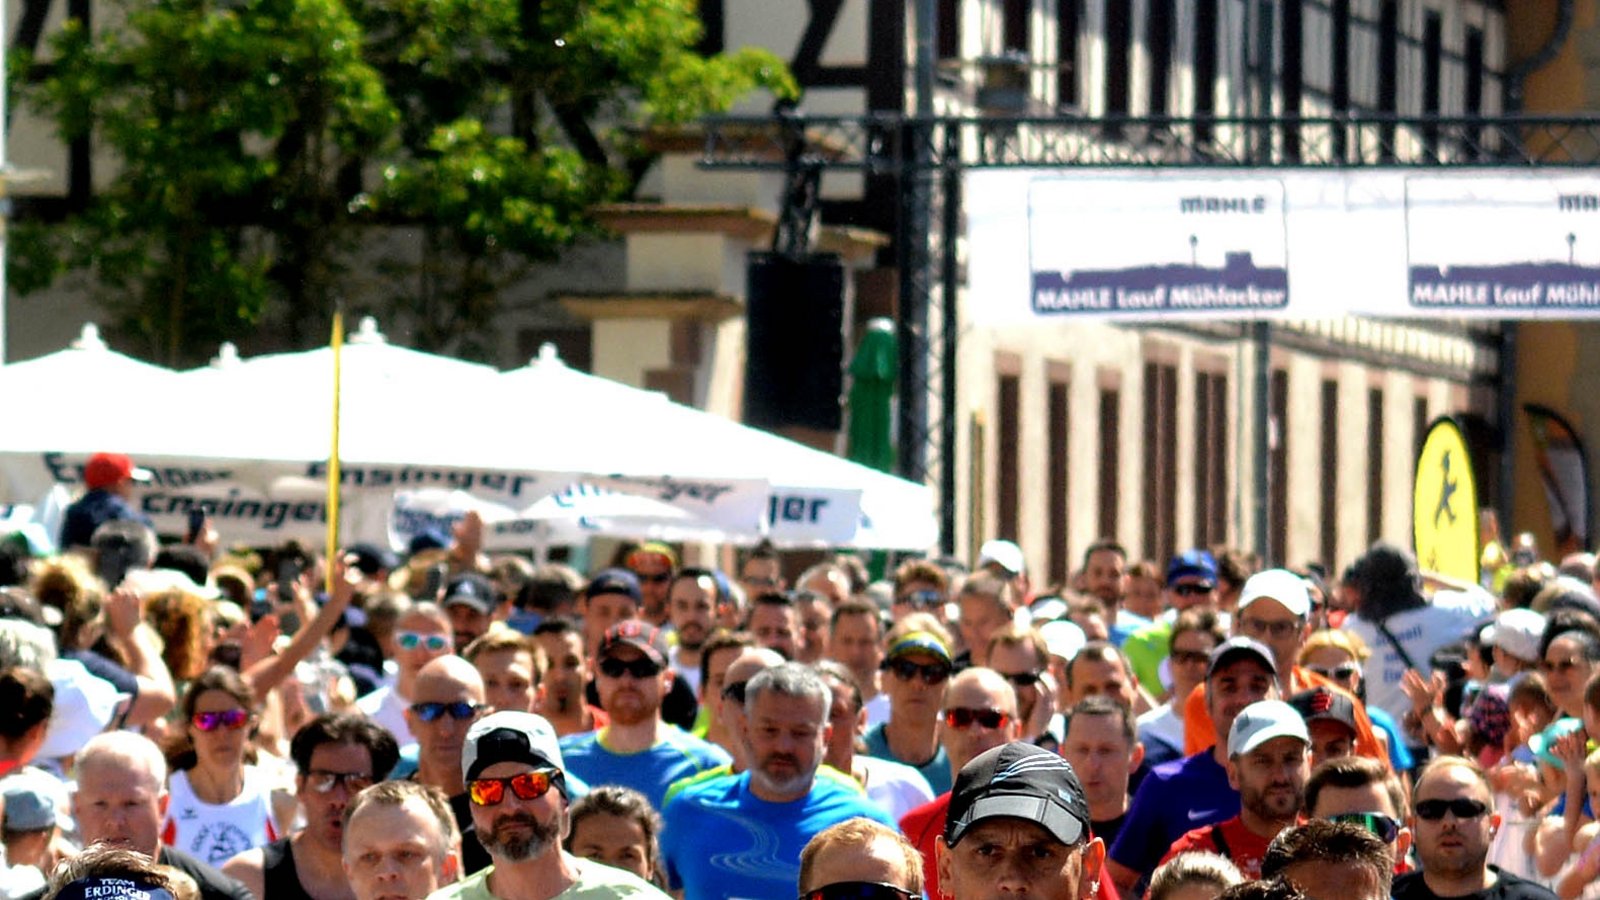 Der Massenstart auf die Zehn-Kilometer-Distanz zeigt, wie beliebt der Mahle-Lauf in Mühlacker auch in seiner 19. Auflage ist. Mehr als 1000 Teilnehmer waren auf der Strecke.  Foto: Stahlfeld